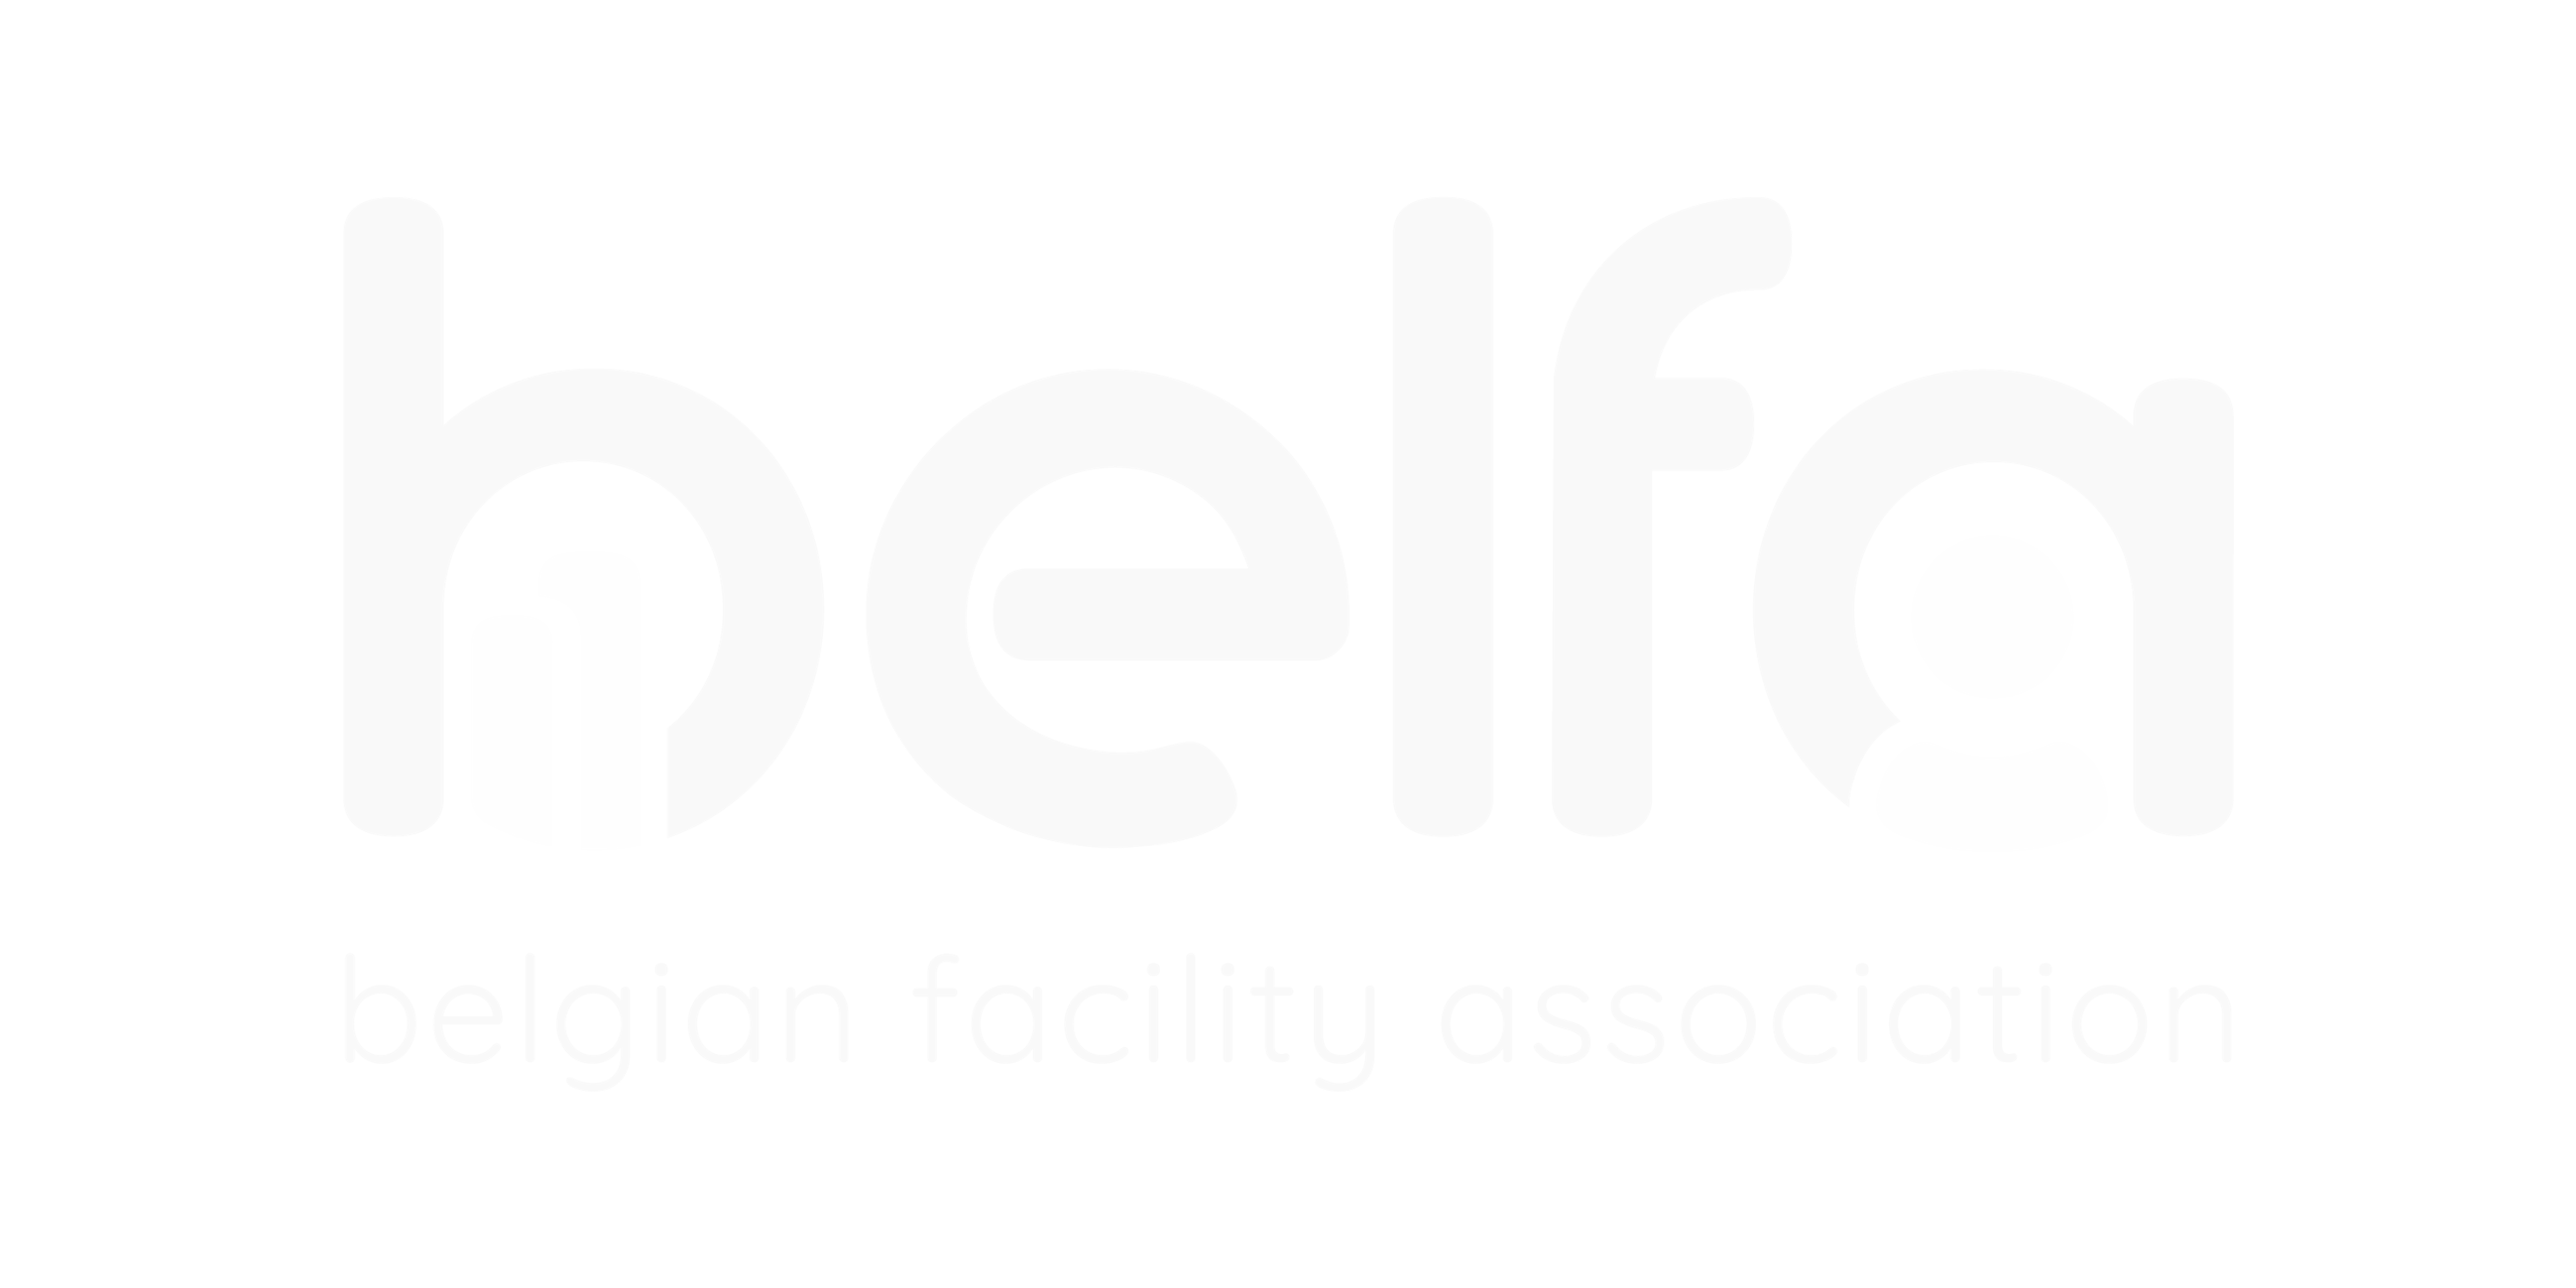 19811 belfa logo white full